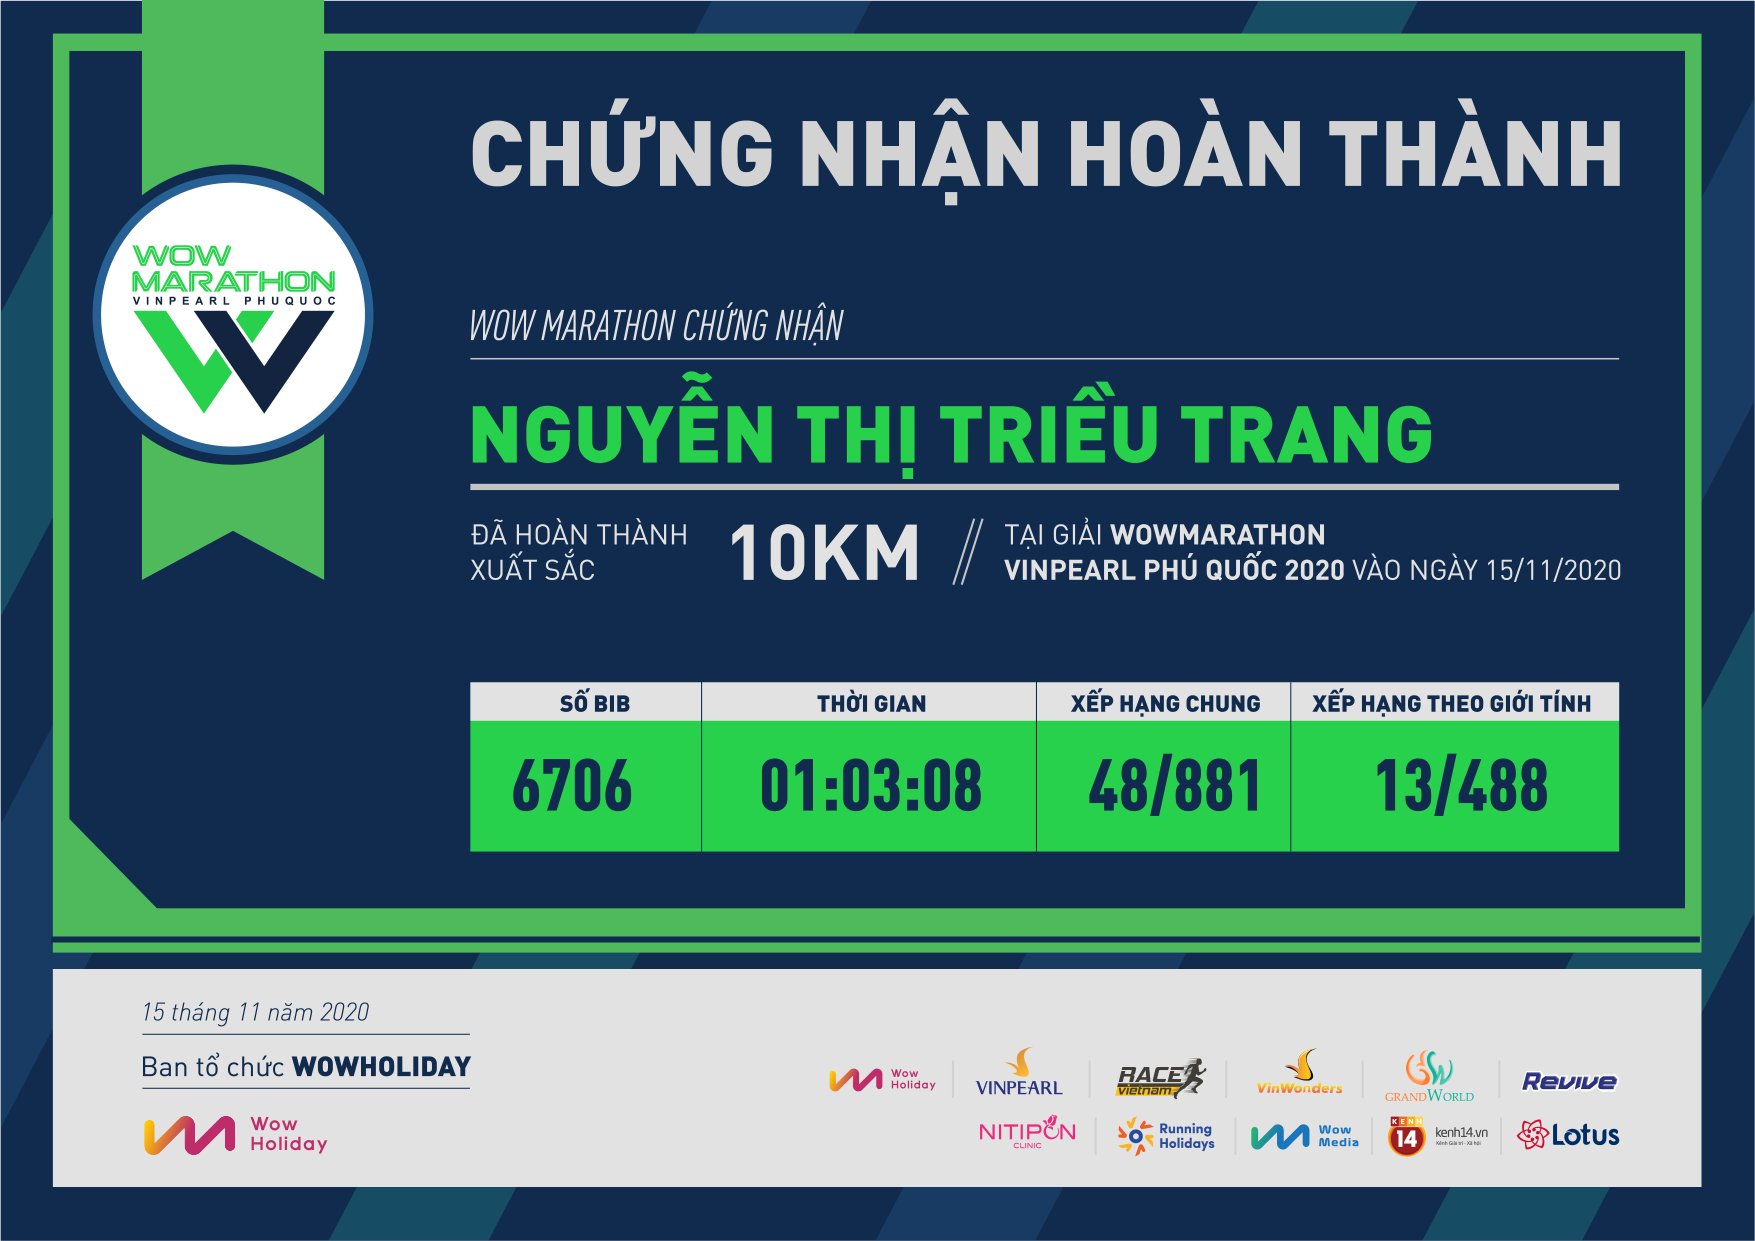 6706 - Nguyễn Thị Triều Trang